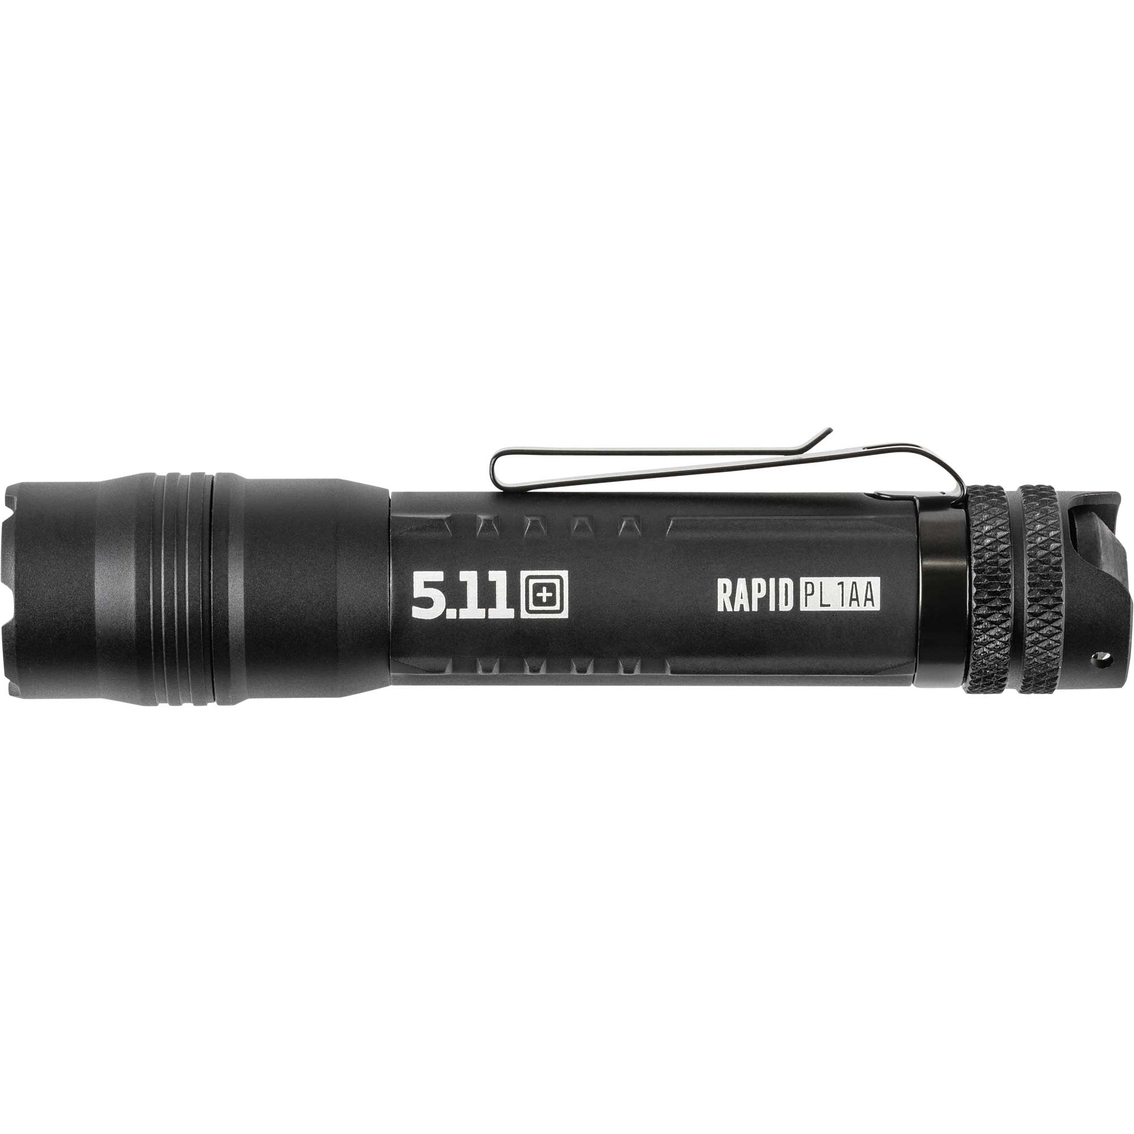 5.11 Rapid PL 1AA Flashlight - Image 2 of 8